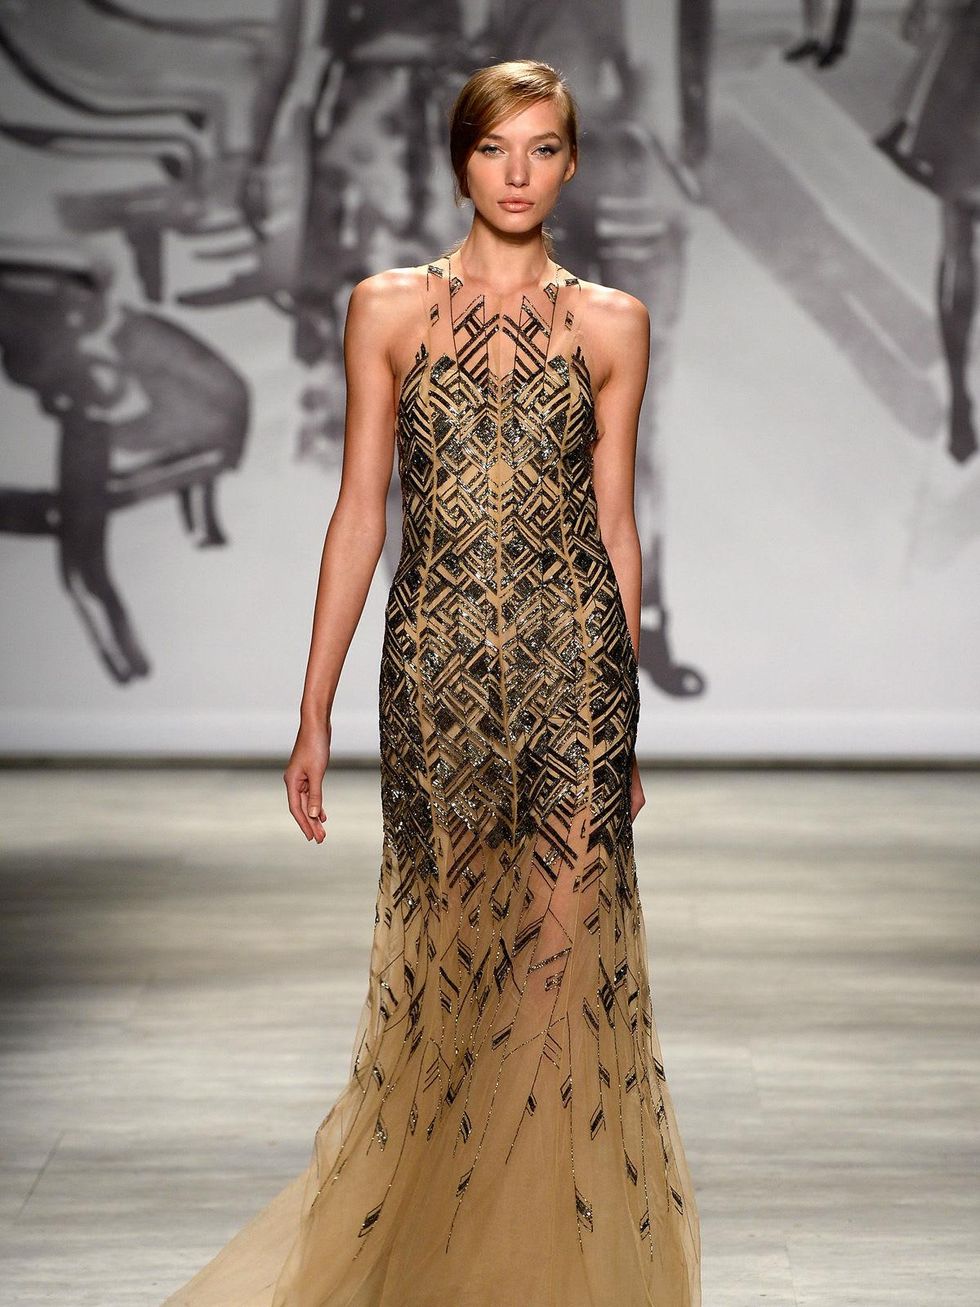 Fashion Week spring 2015 Lela Rose column gown